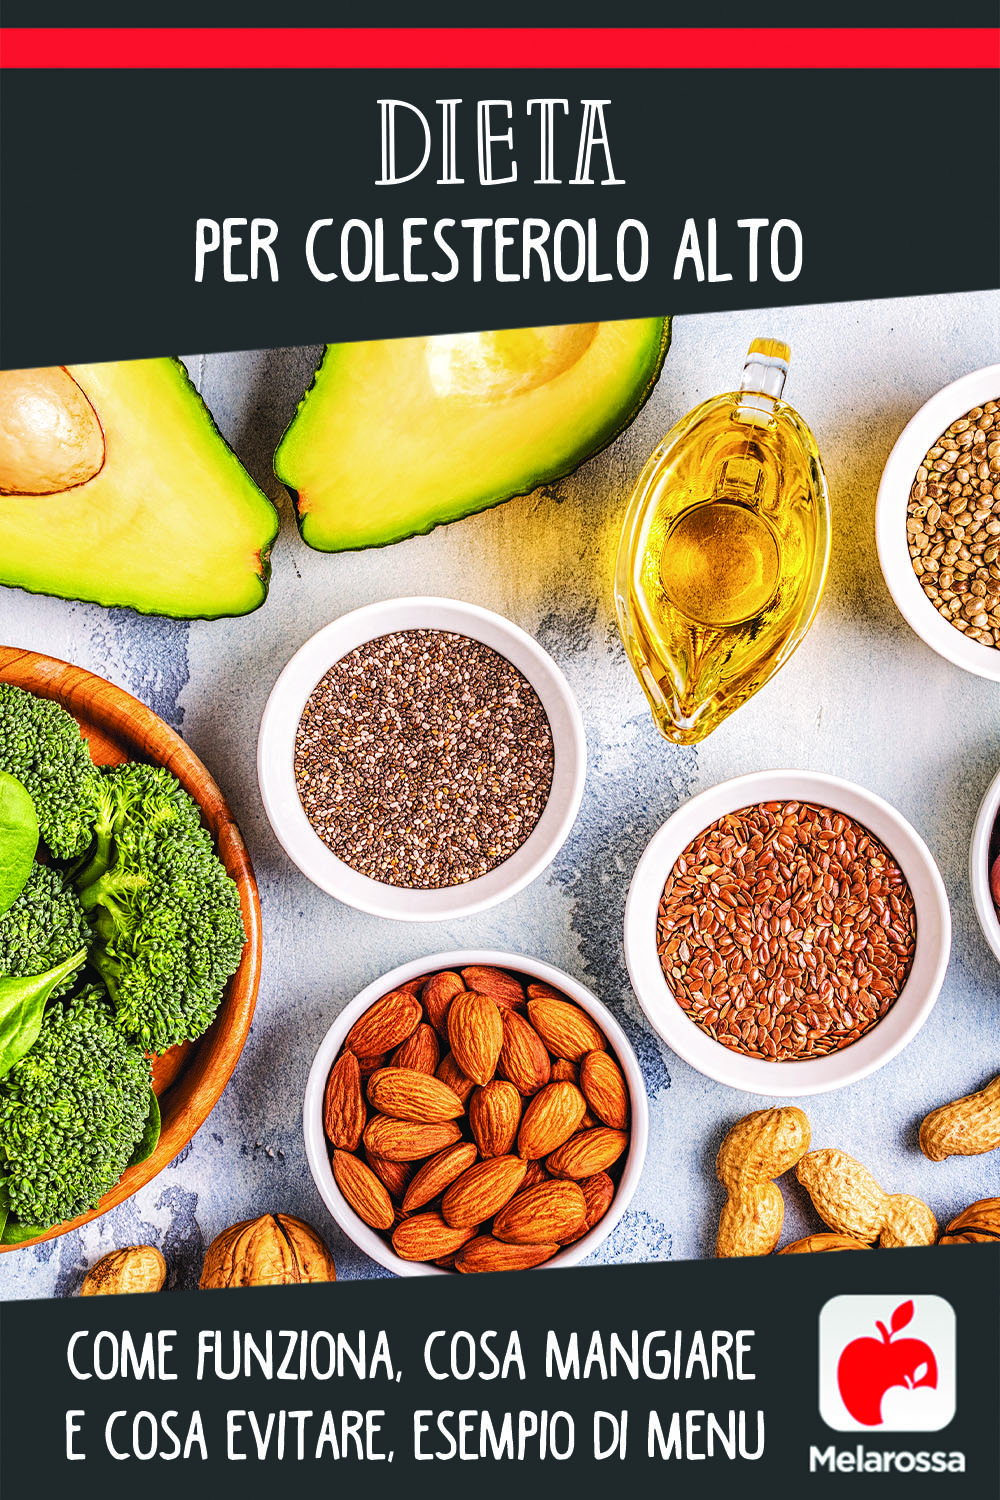 Dieta per colesterolo alto: come funziona, cosa mangiare e cosa evitare, esempio di menu